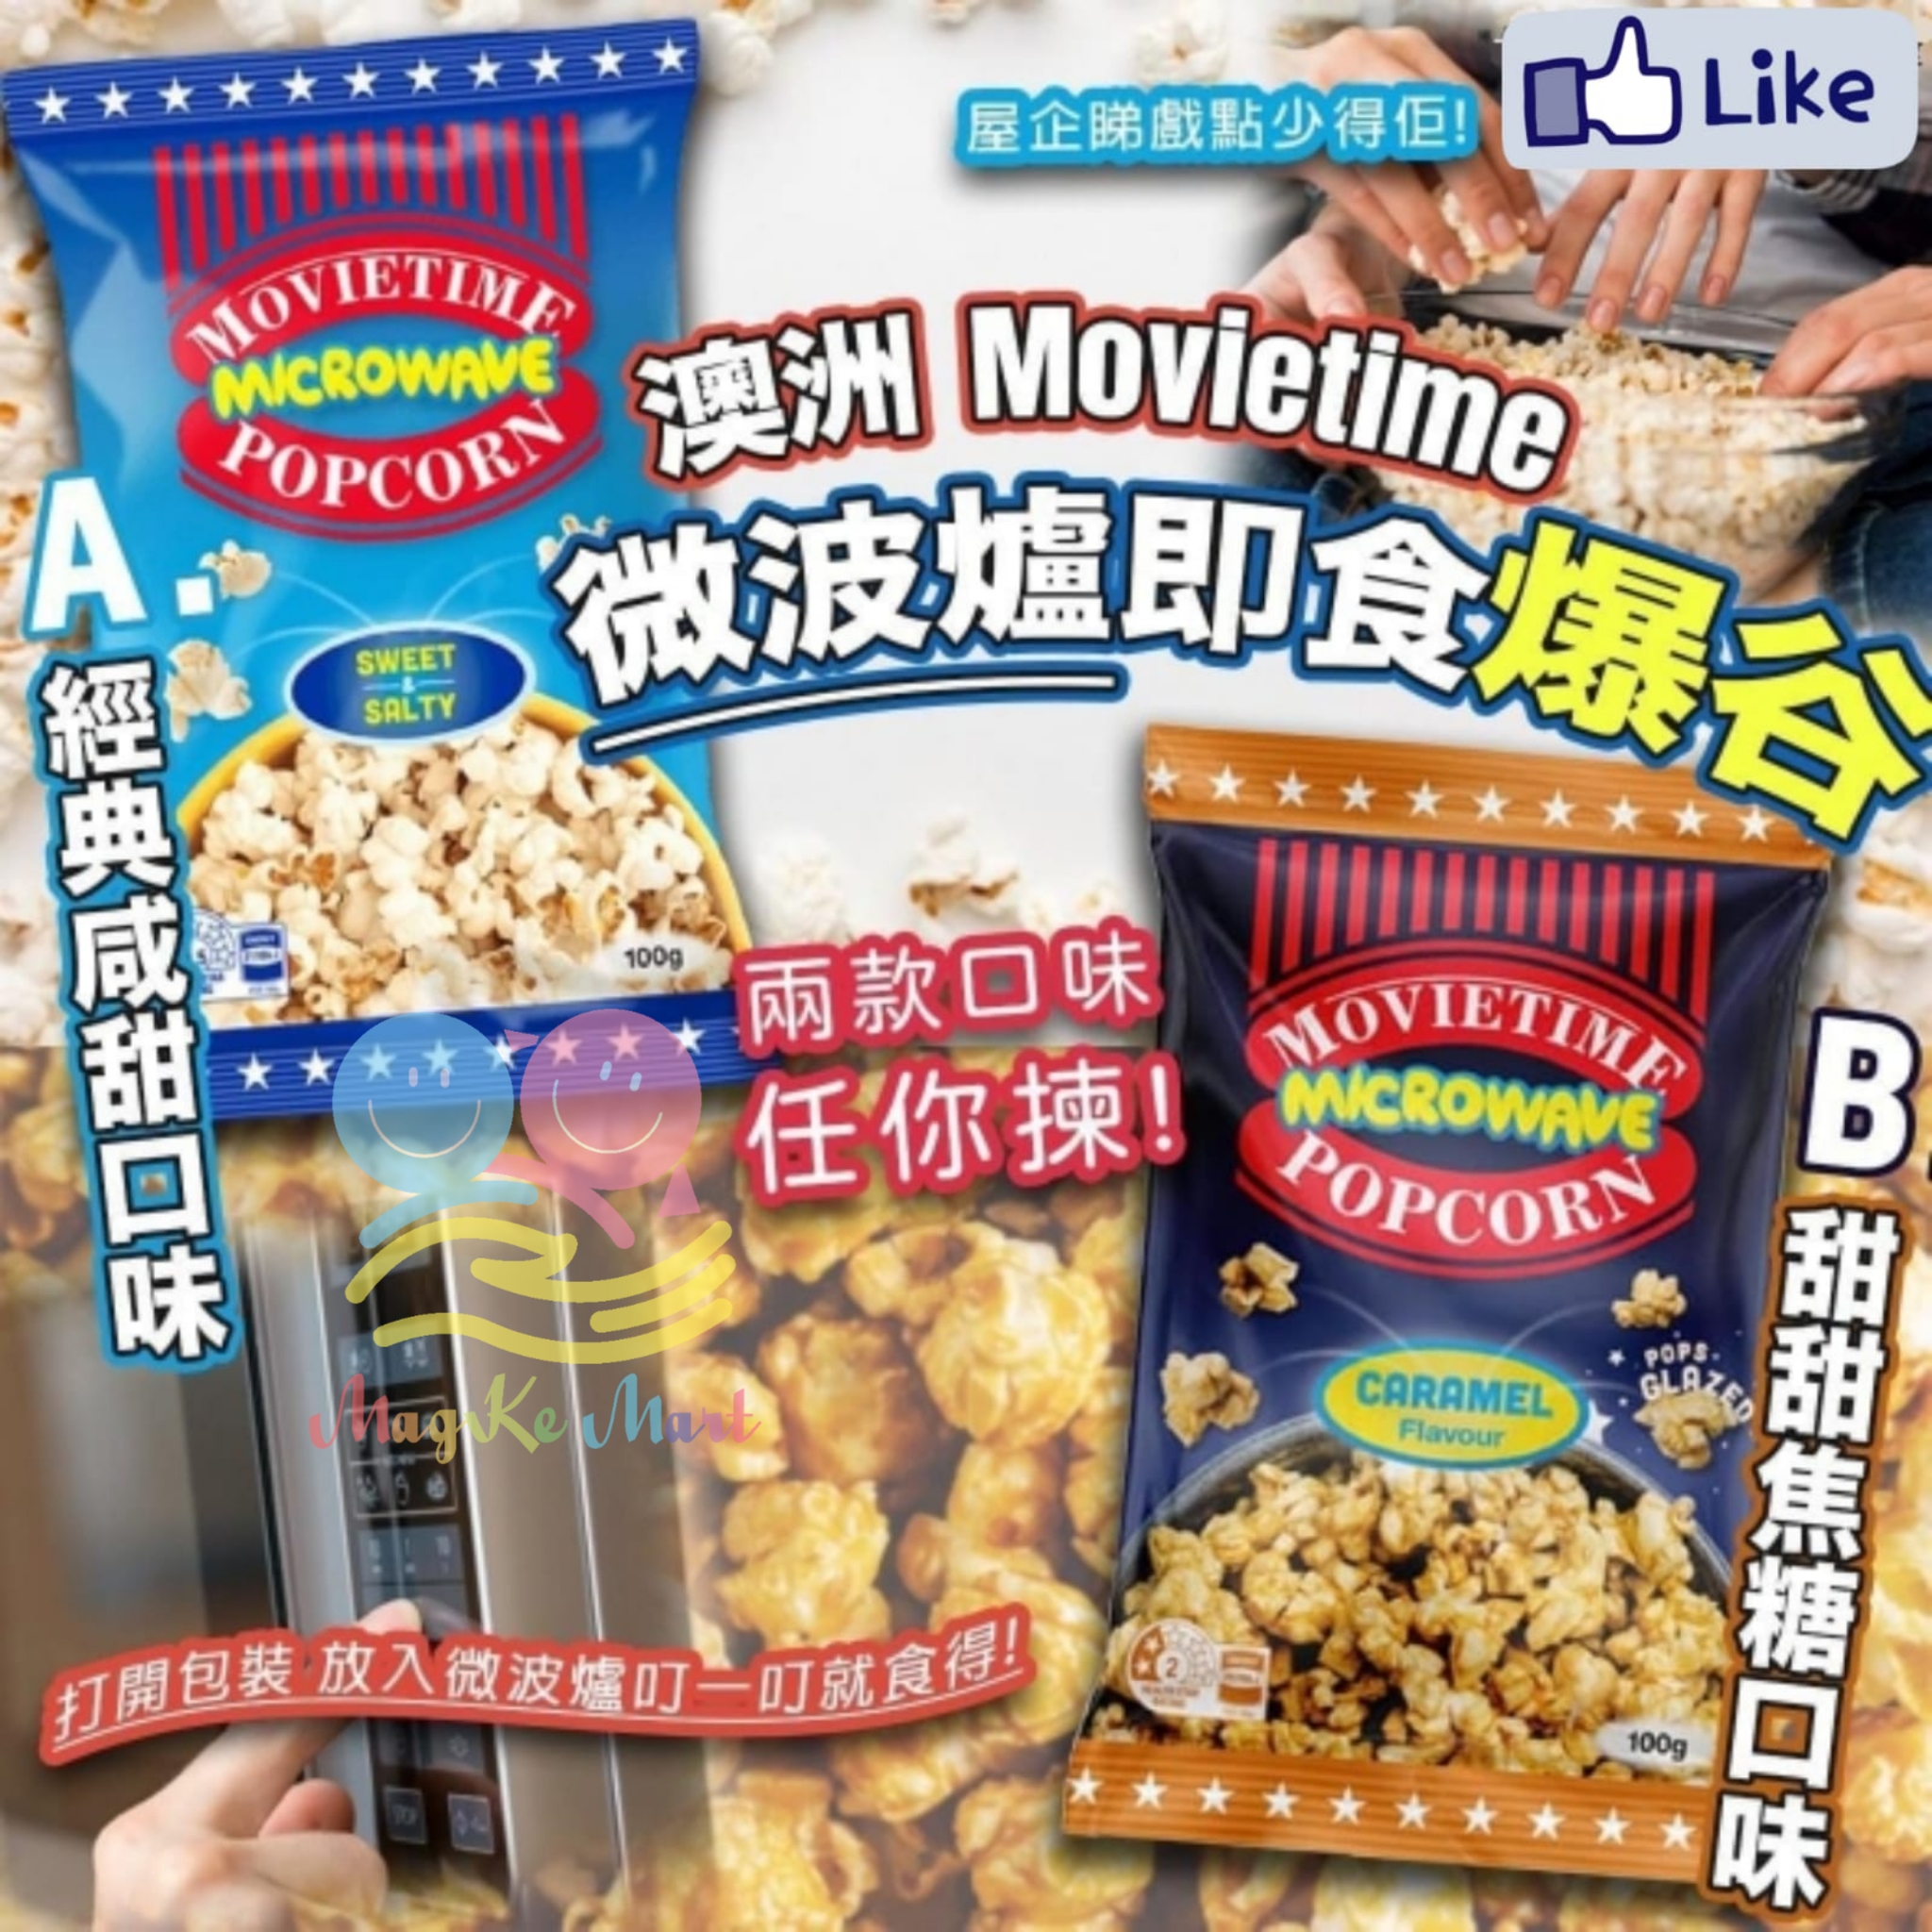 澳洲 Movietime 微波爐即食爆谷(100g) (B) 甜甜焦糖口味